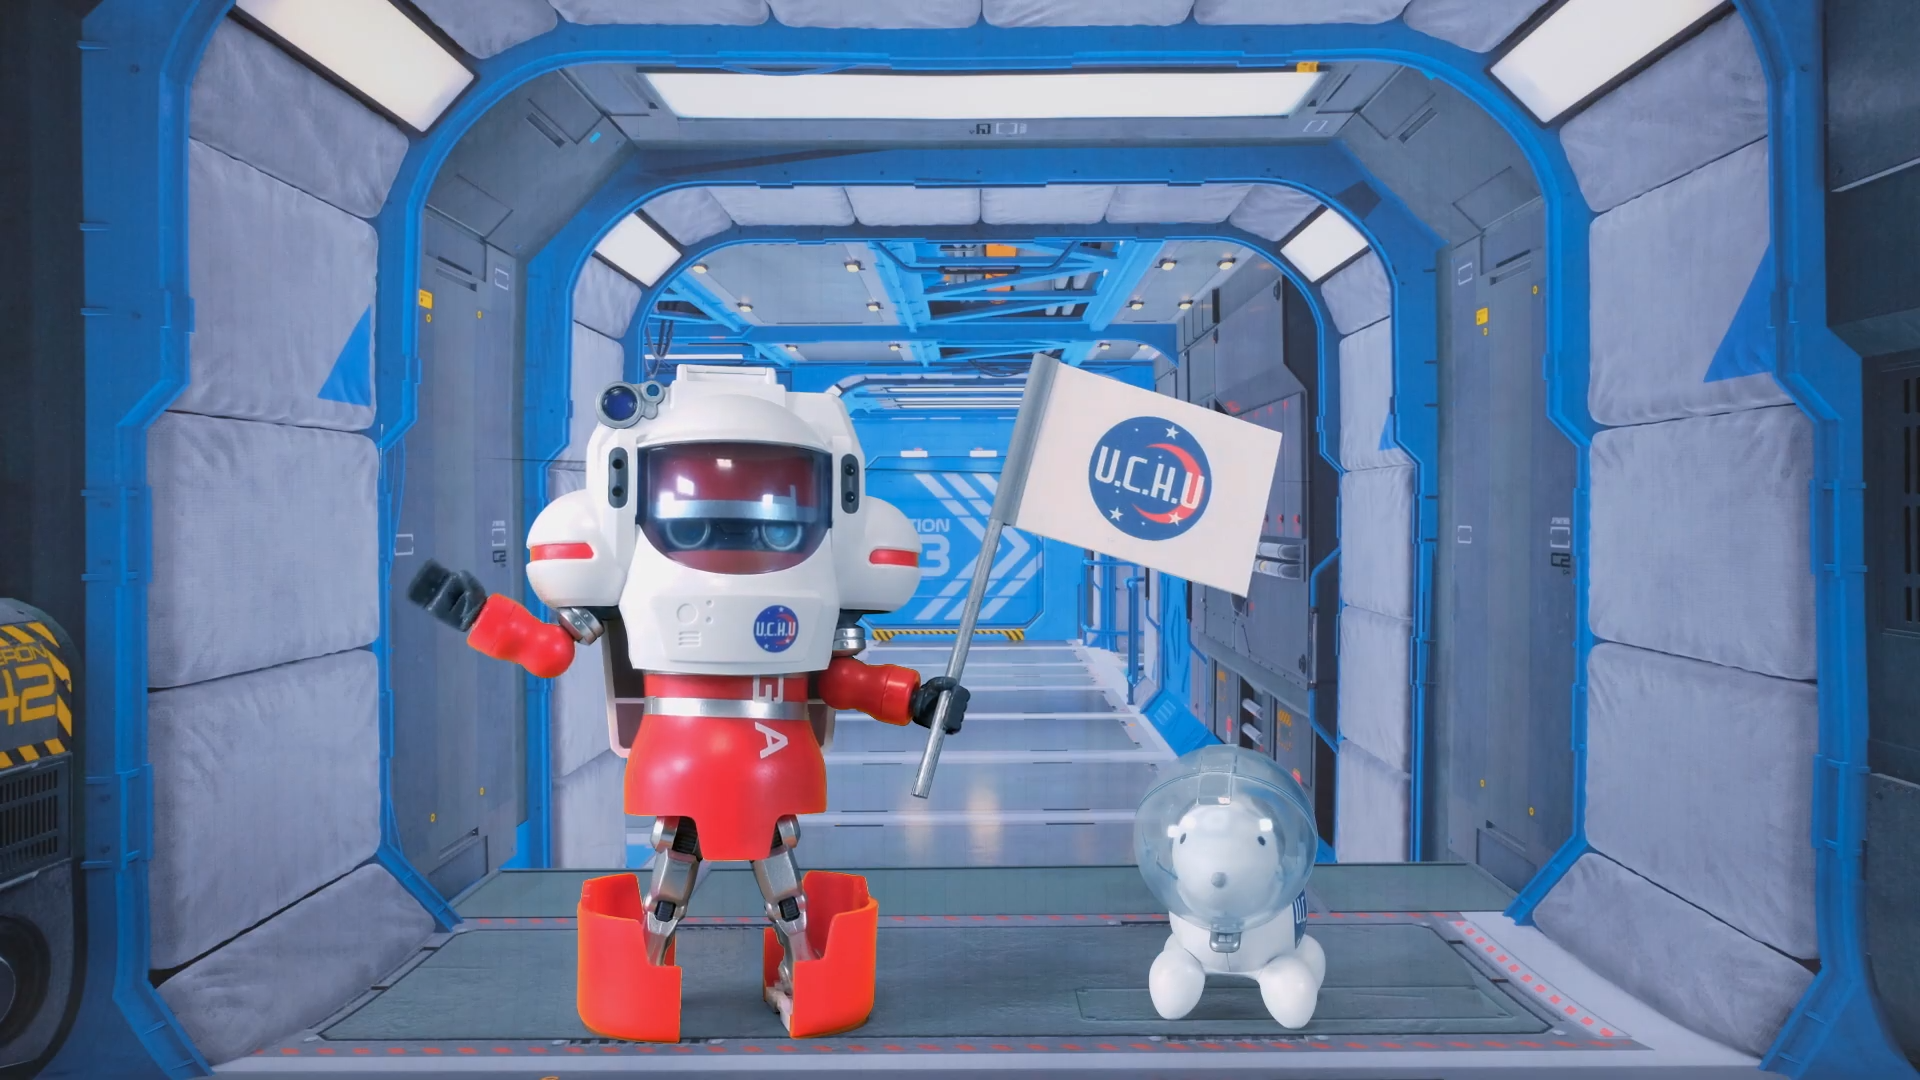 Робот-космонавт и его помощник пёсик, отправившиеся в космос 31 июля 2021 года, в день когда Мацумото исполнилось 54 года. Робот в собранном виде повторяет вид основной линейки продуктов компании TENGA в фирменных цветах — красном и металлике. А собачка — оживший представитель линейки продукции EGG (с англ. яйцо)  